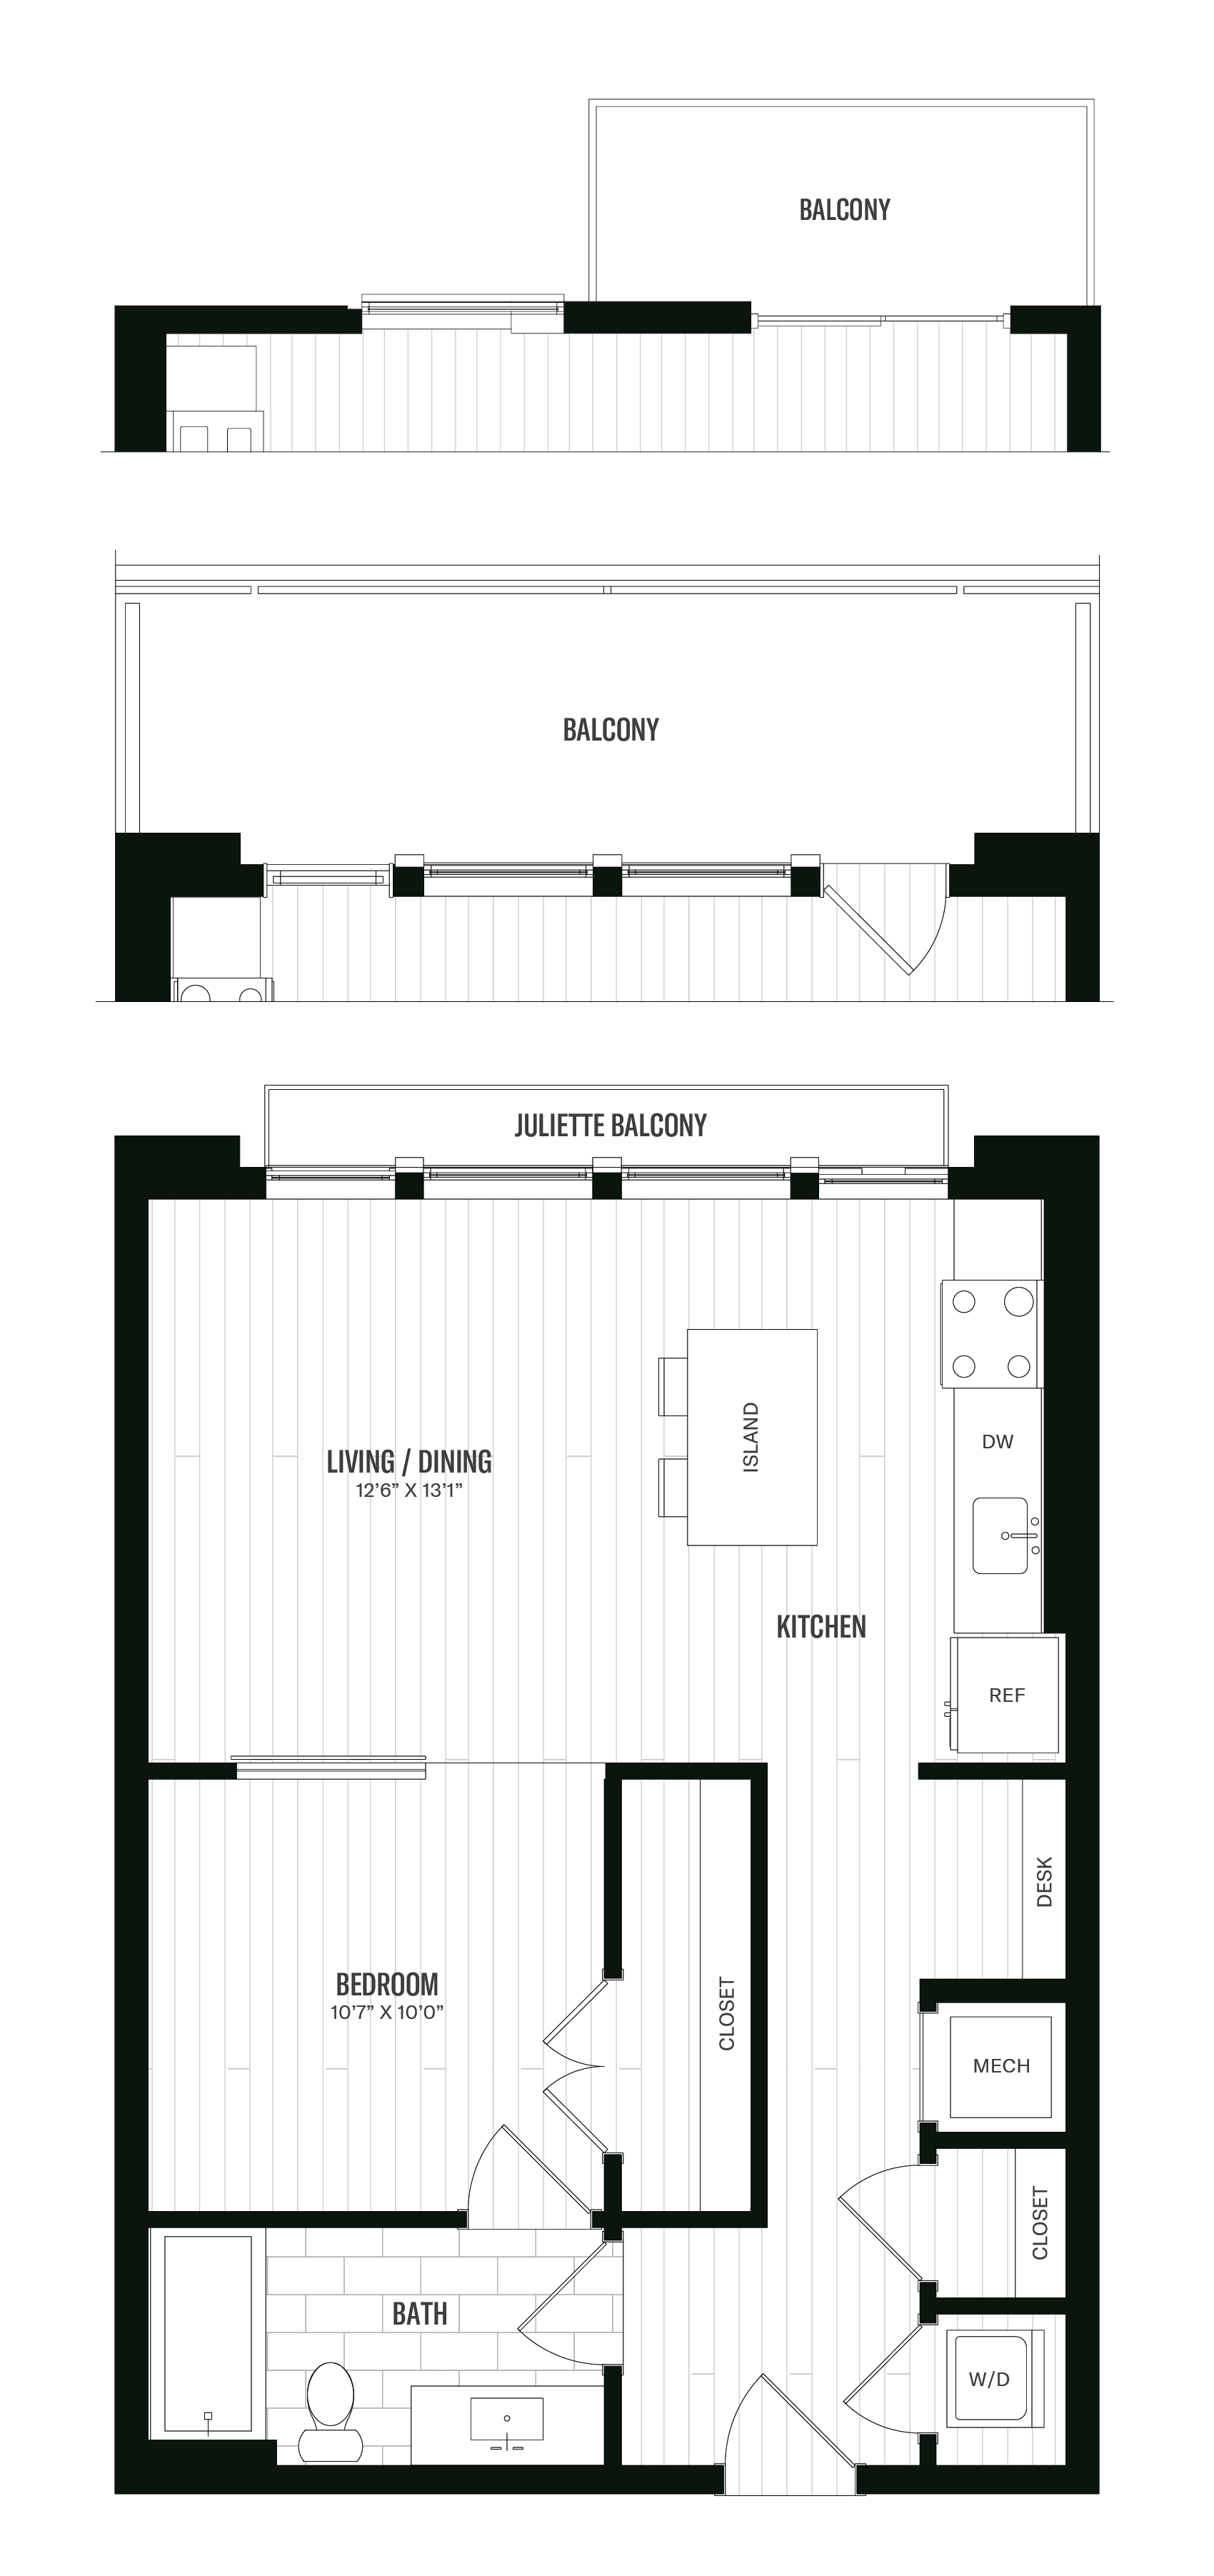 Floorplan image of unit 215